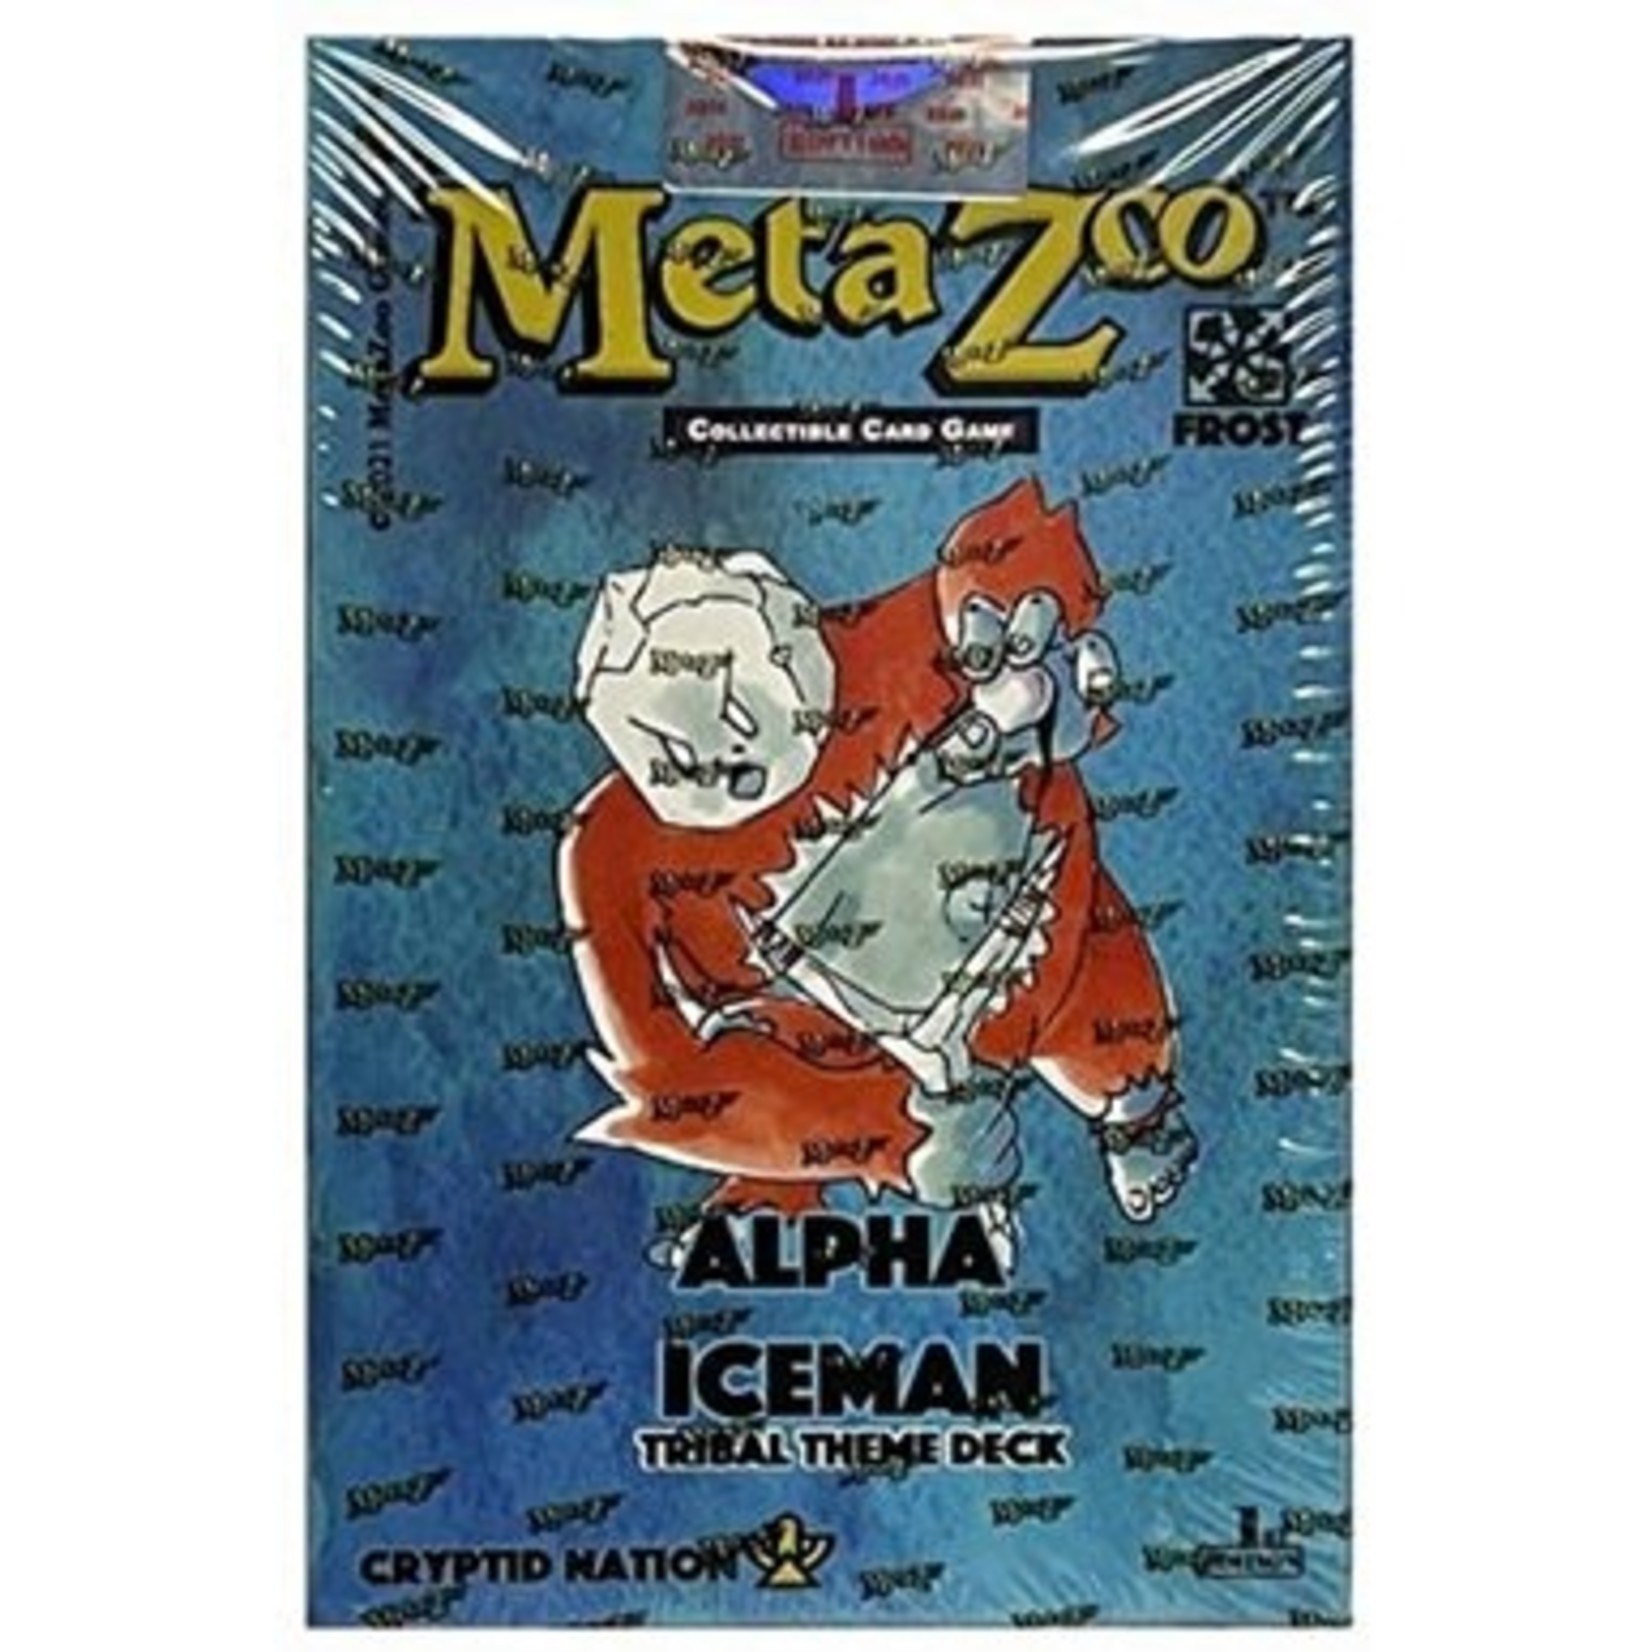 MetaZoo MetaZoo Cryptid Nation - Tribal Theme Deck (Alpha Iceman) (2nd Edition)